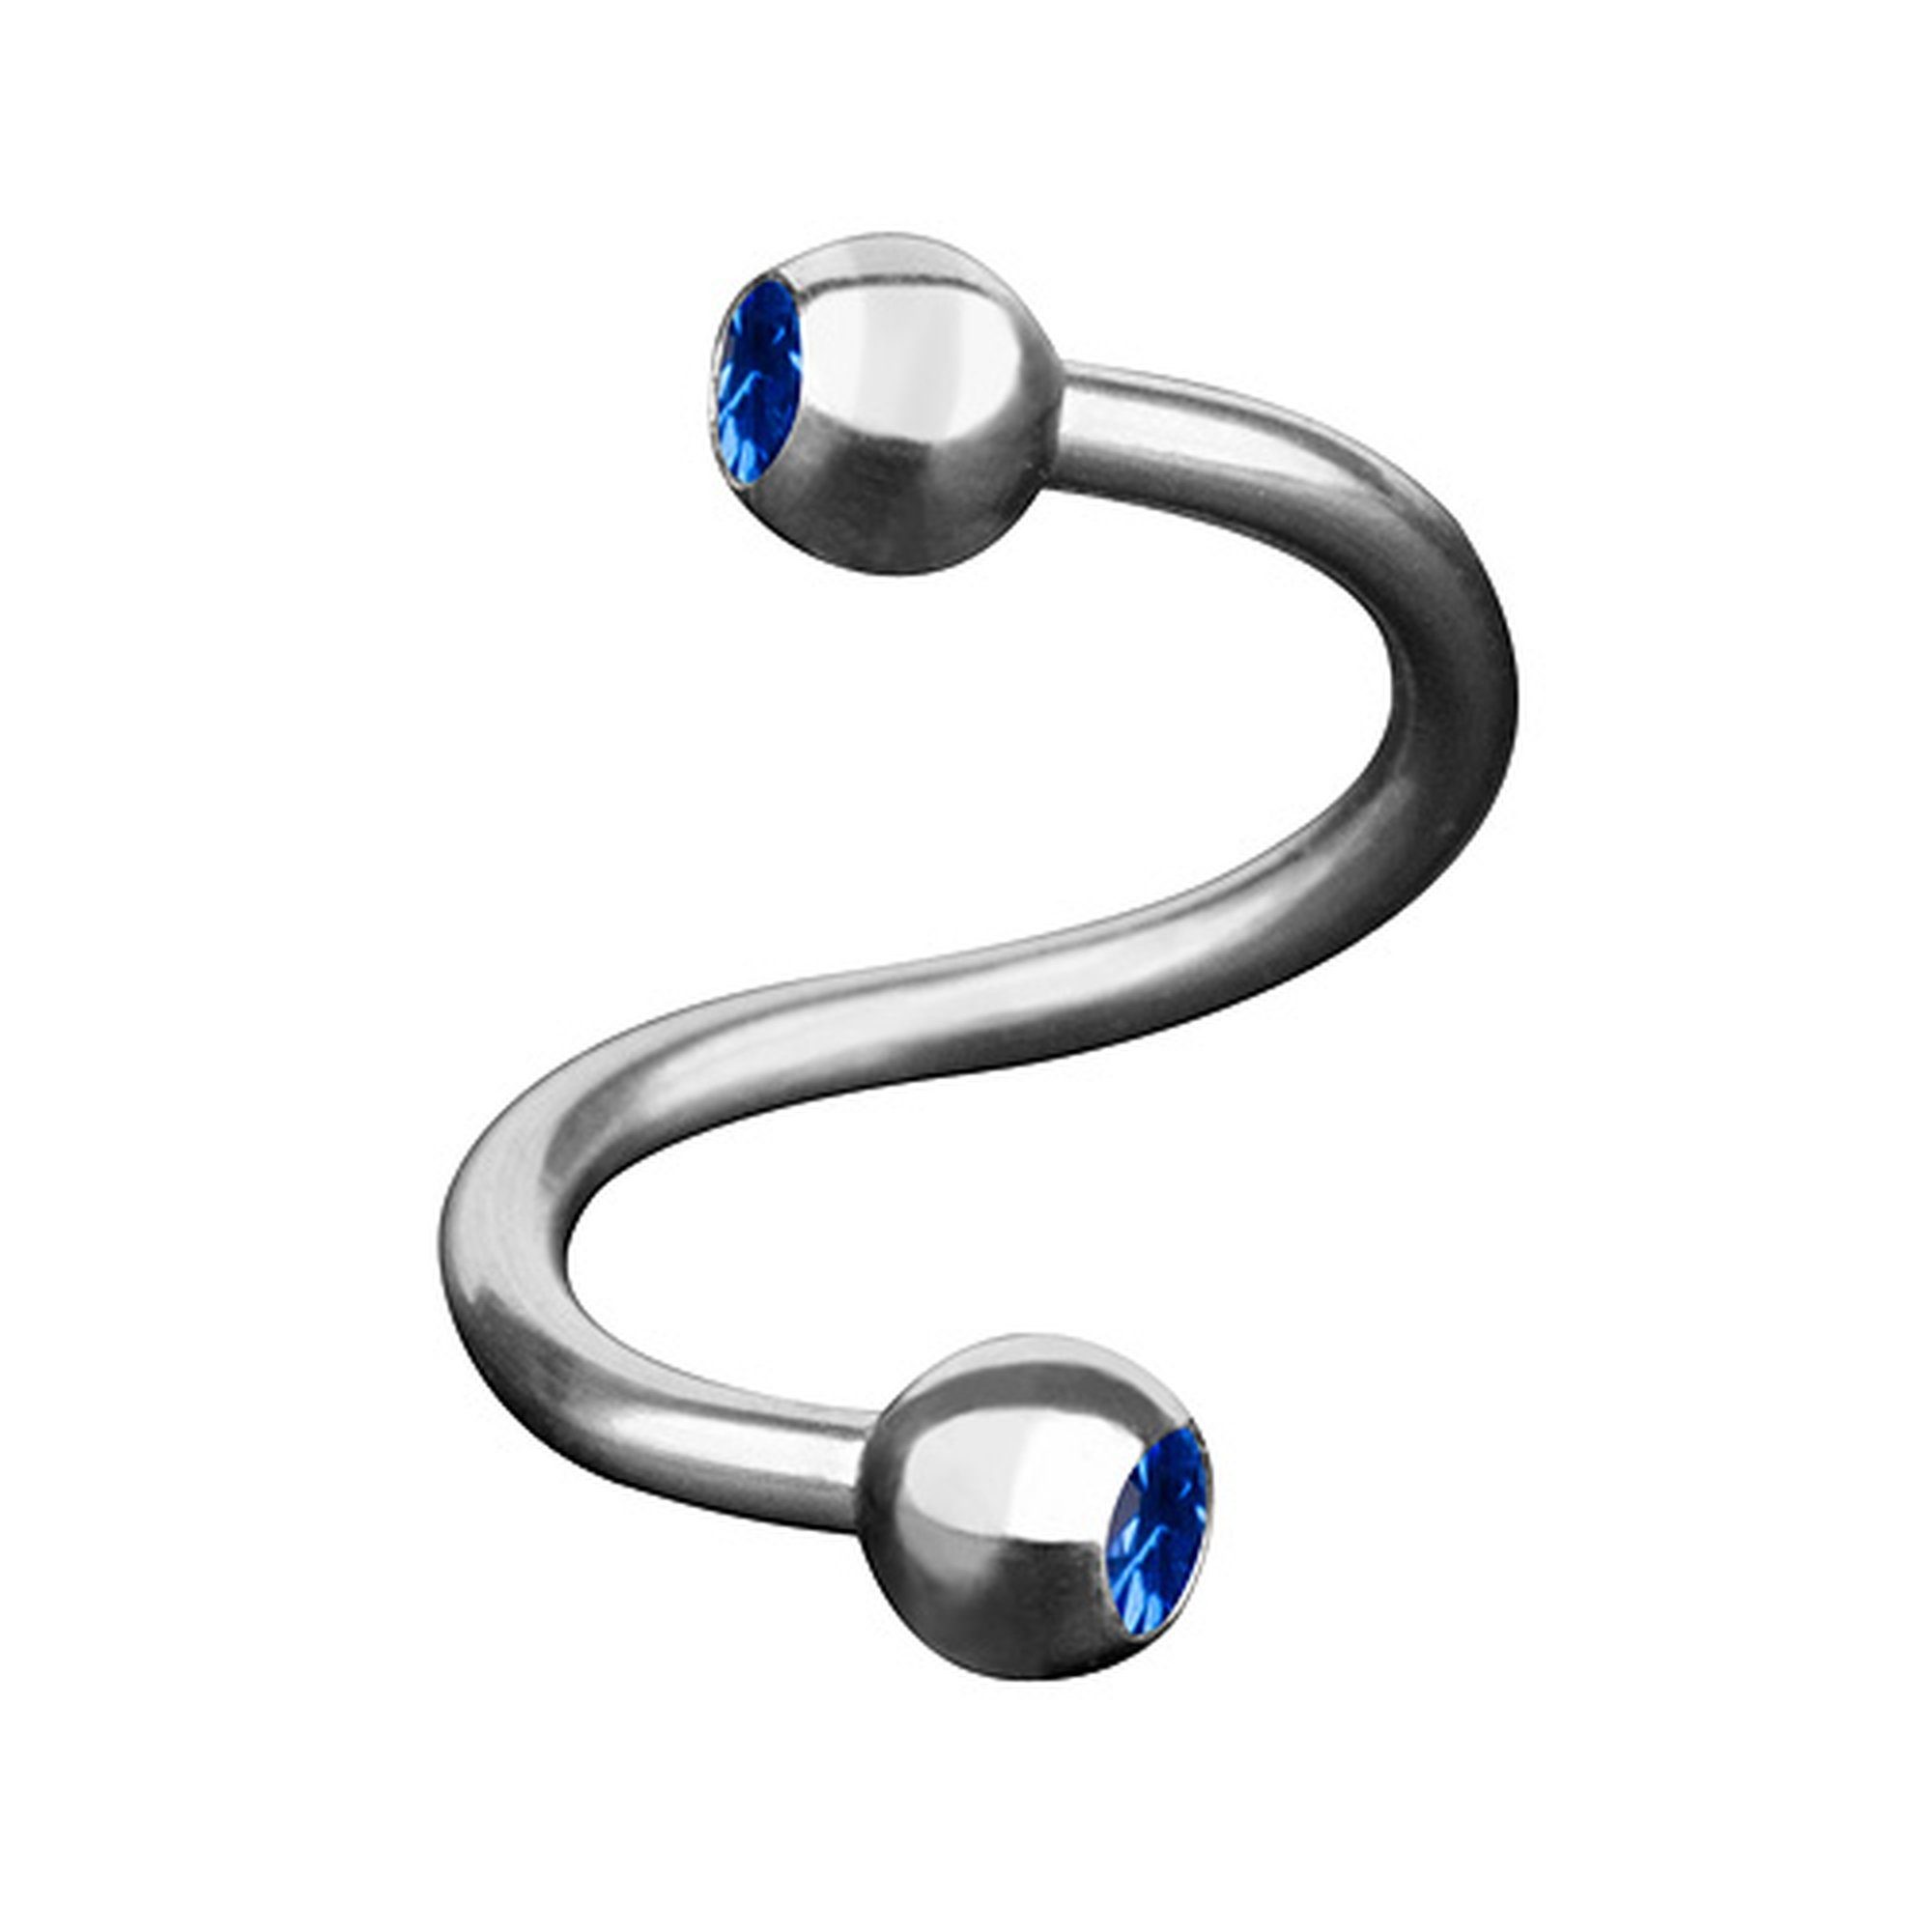 Taffstyle Piercing-Set Piercing SpiraleTwist mit Doppel Kristall Kugel, Piercings Lippenpiercing Lippe Schmuck SpiraleTwist Doppel Kristall Blau